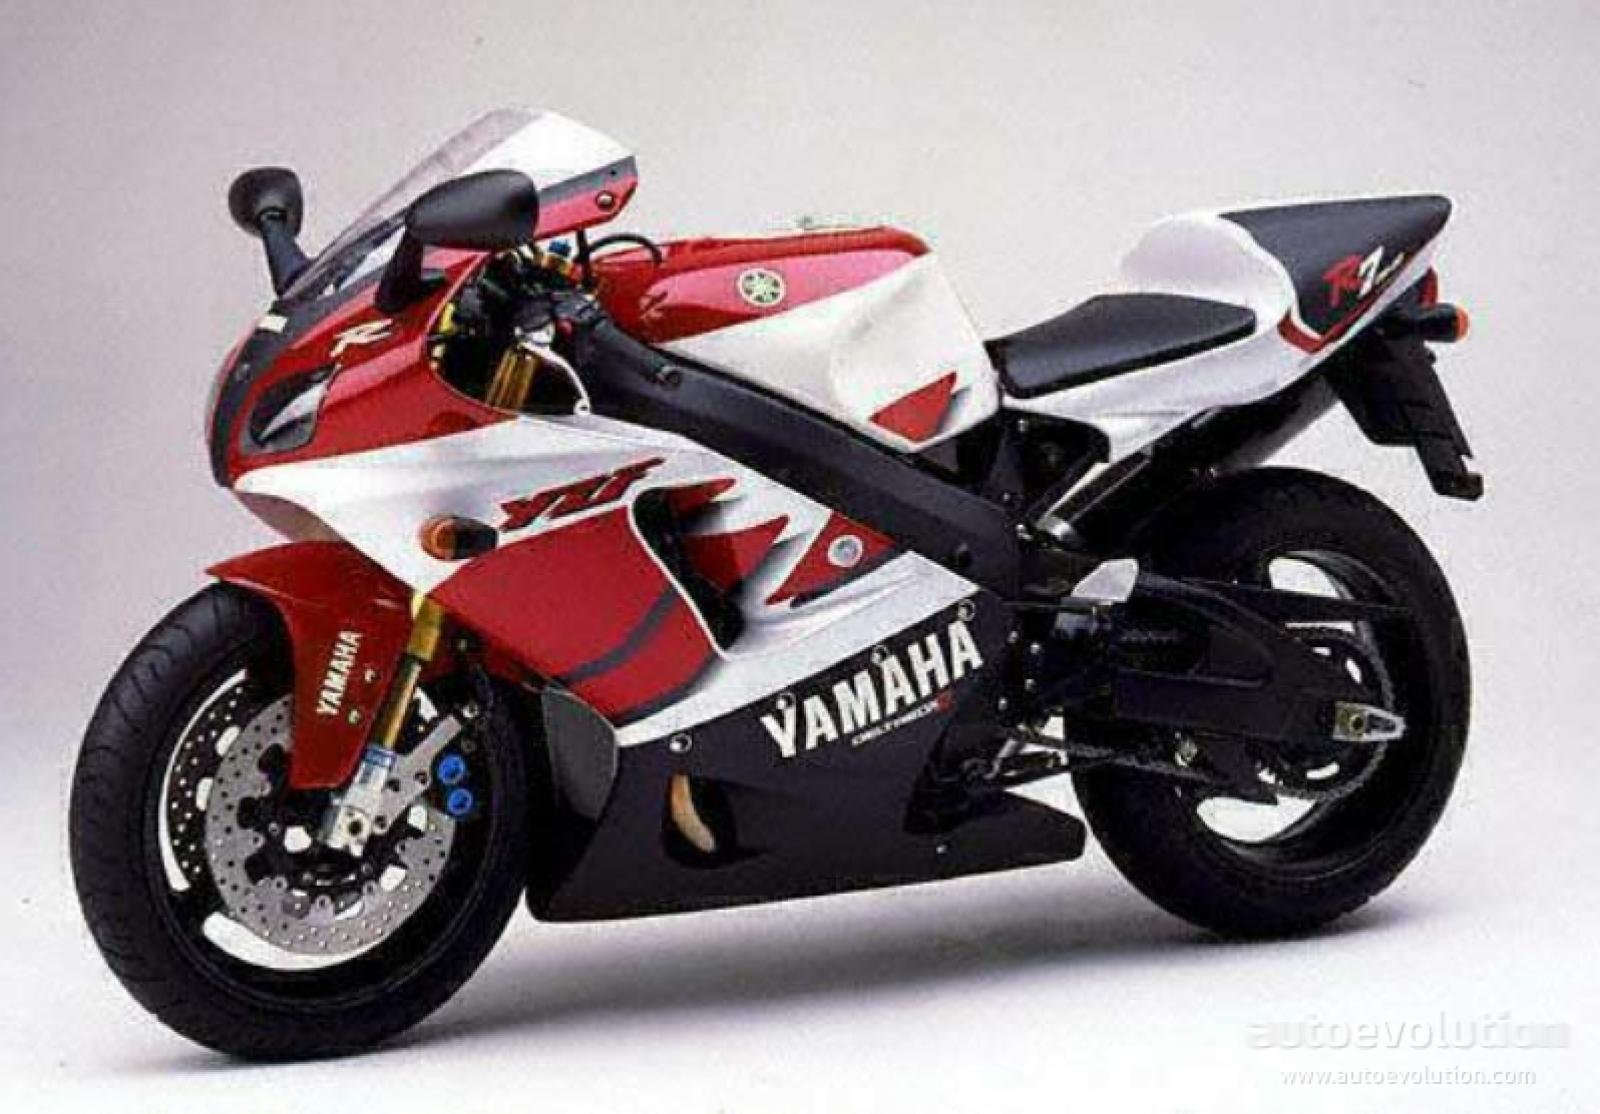 Yamaha YZF-R7 2000 photo - 3